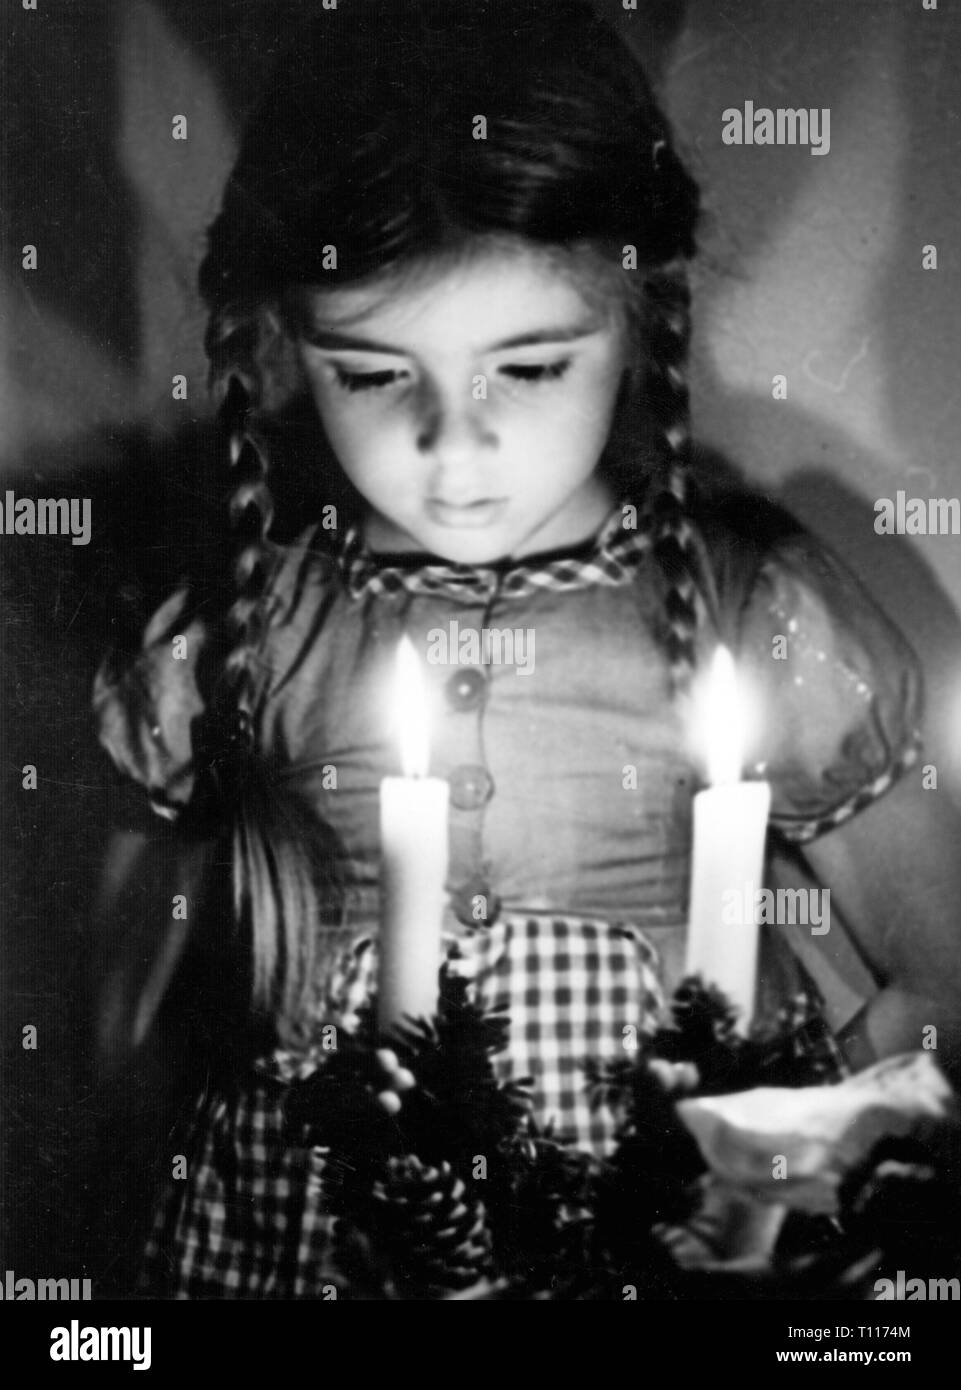 Weihnachten, Advent, kleines Mädchen mit einem Adventskranz, Deutschland, 1950er Jahre, Additional-Rights - Clearance-Info - Not-Available Stockfoto